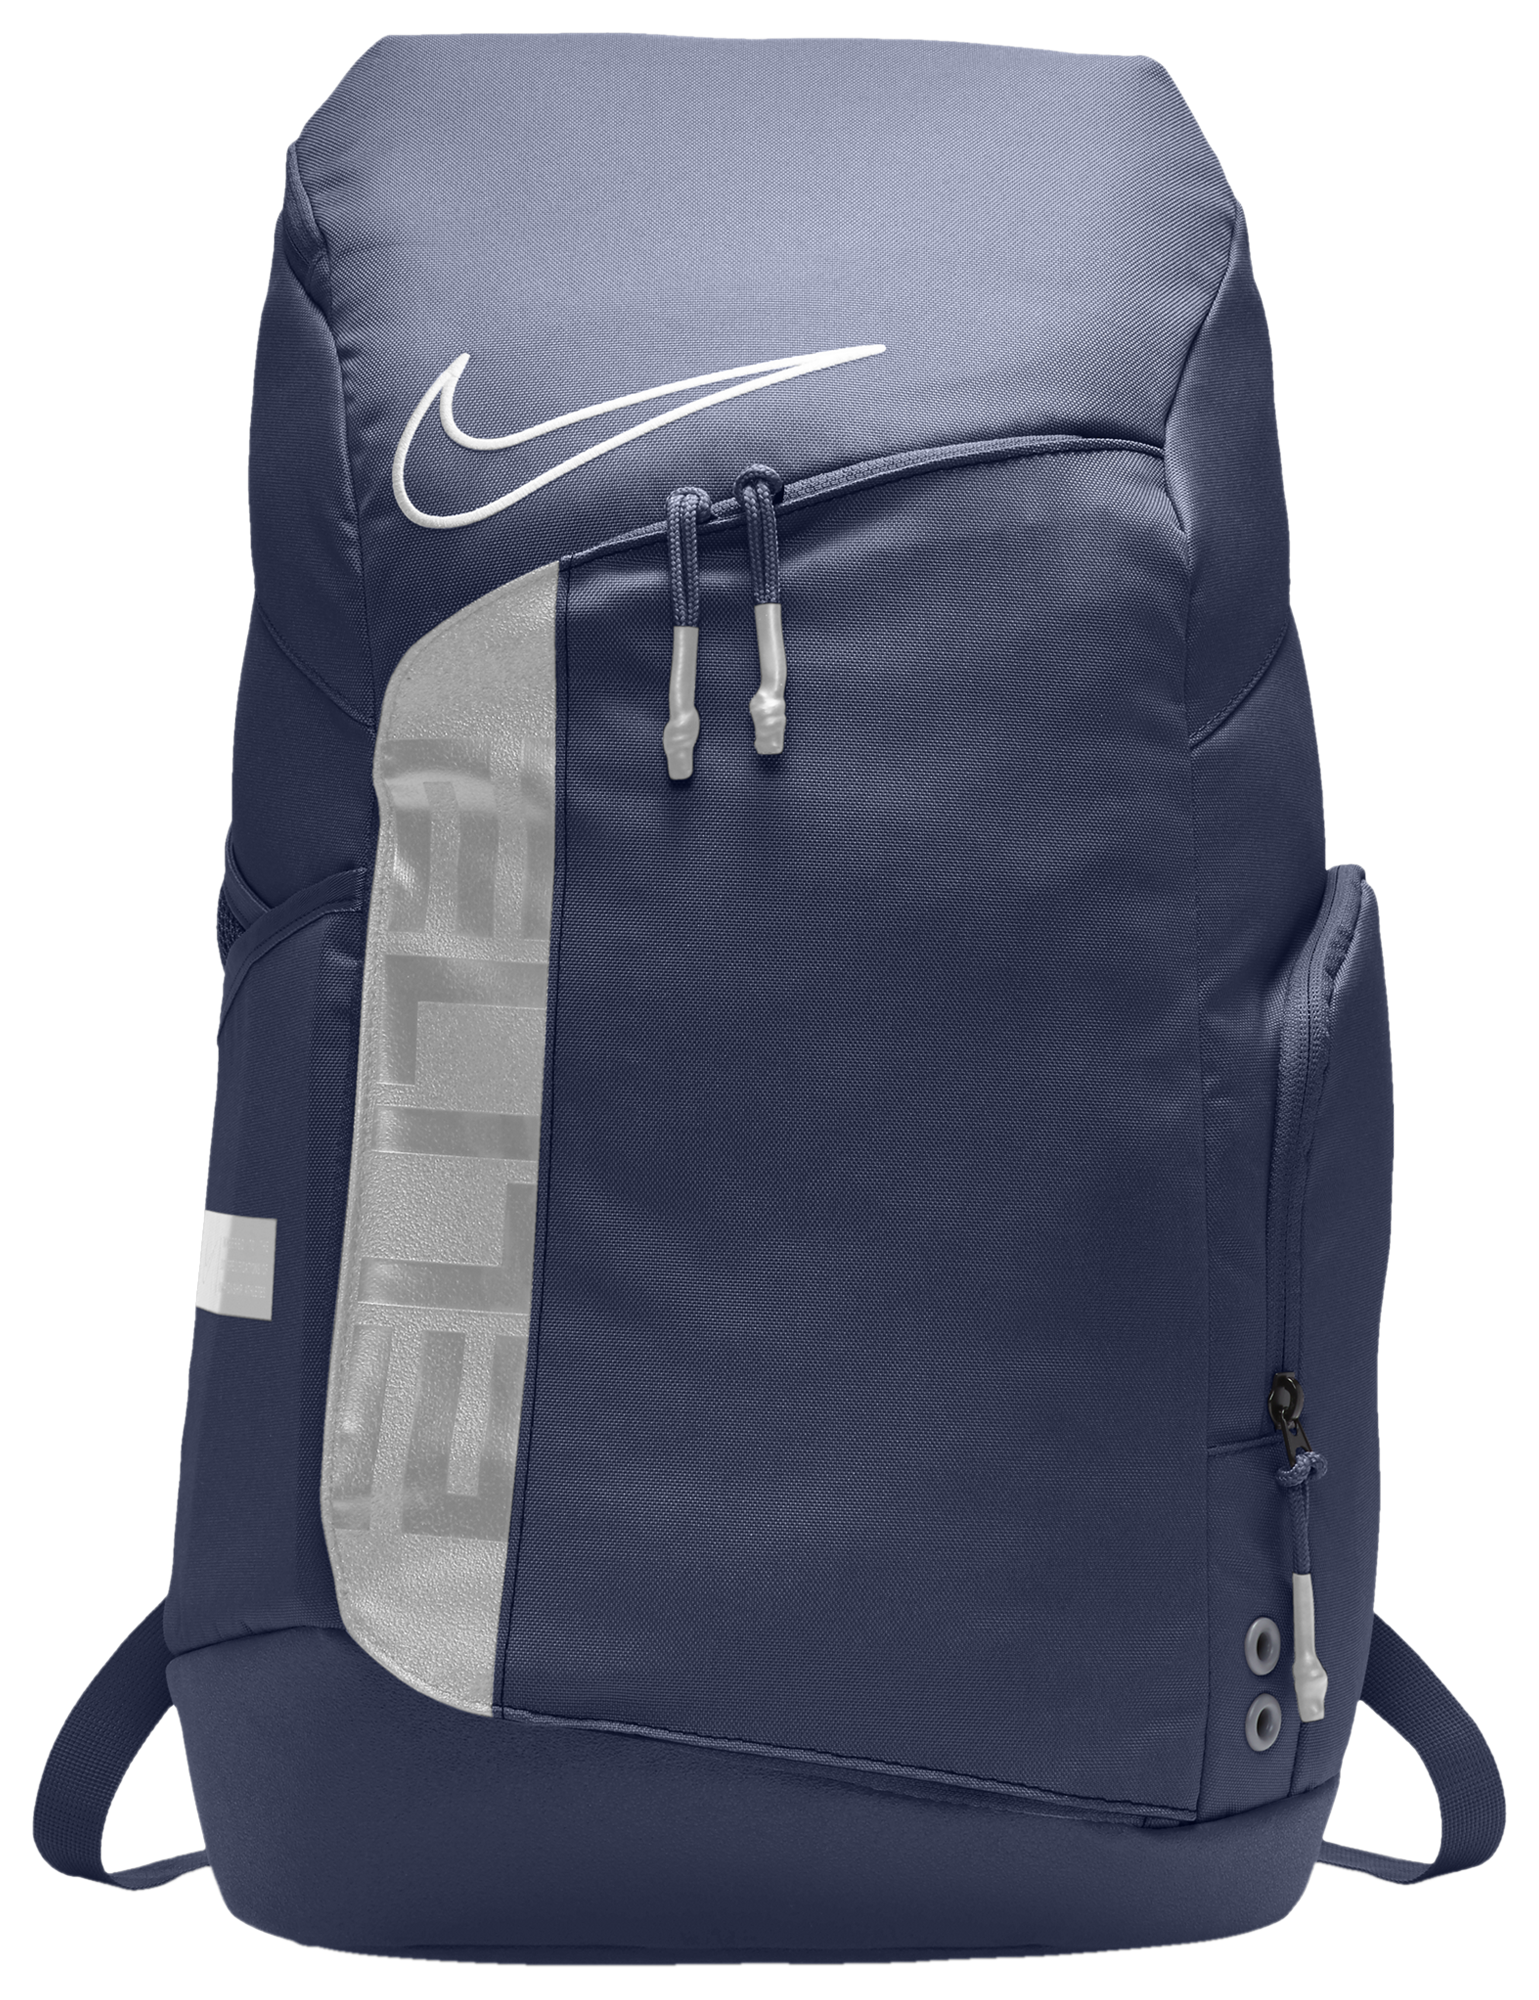 nike elite backpack new